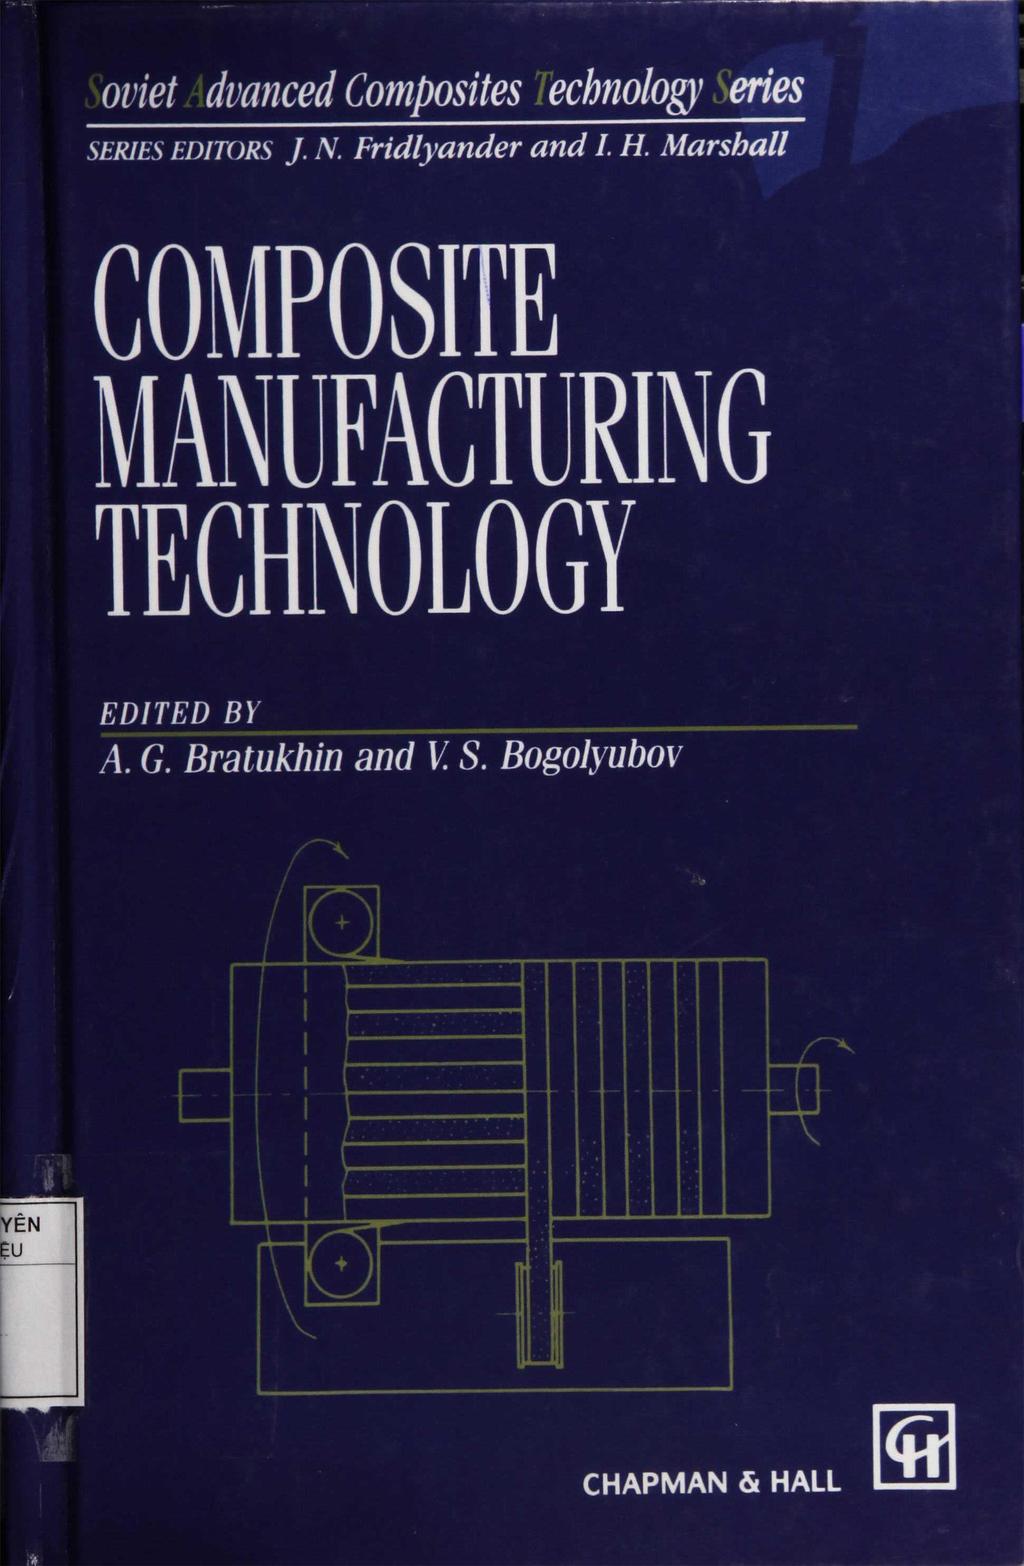 oviet dvanced Composites echnology eries SERIES EDITORS J. N. Fridlyander and I.